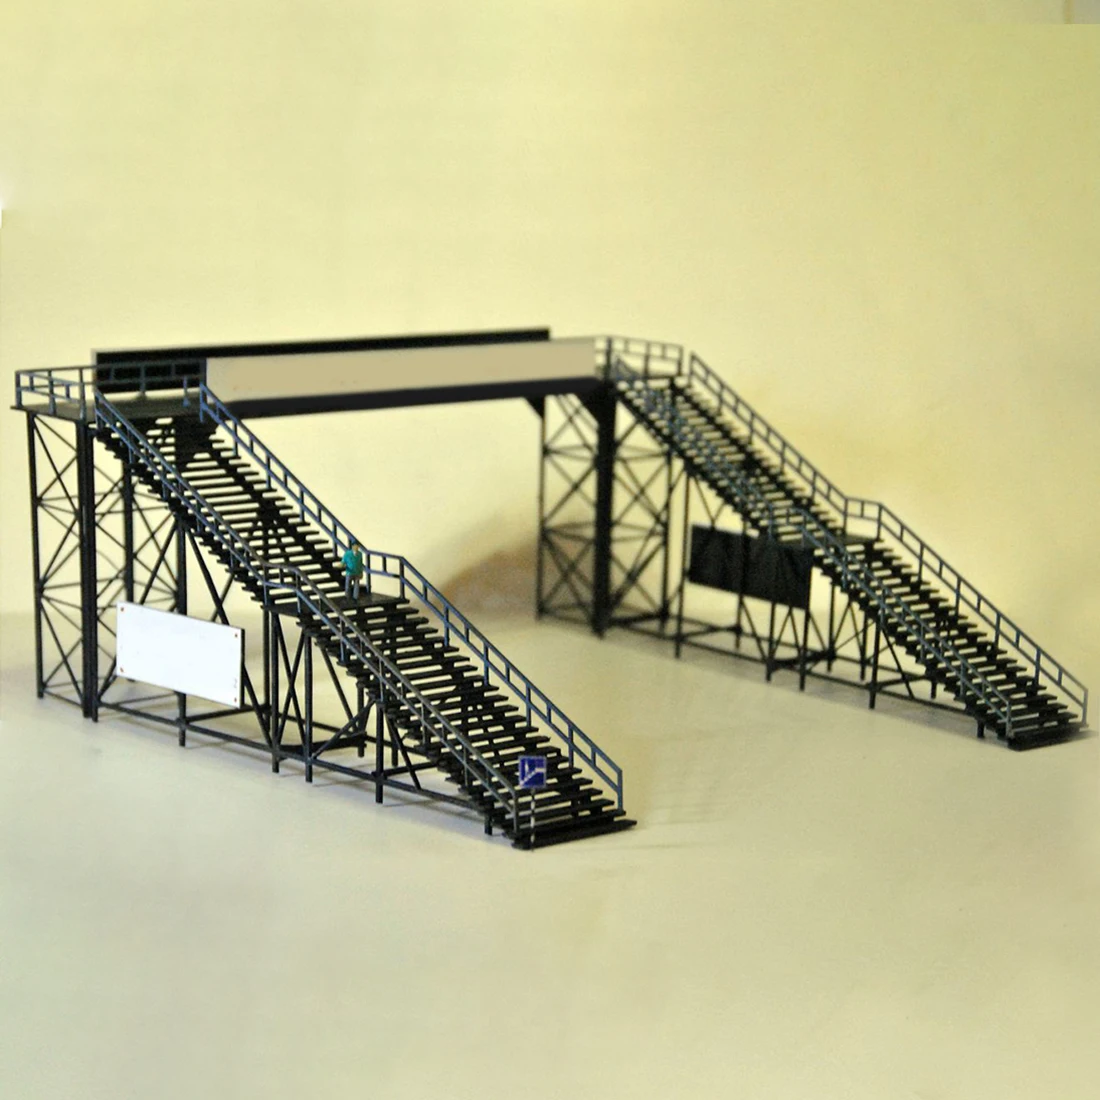 

NFSTRIKE 1:87 HO Масштаб рельсовая станция, модель моста, песочный стол, модель украшения, аксессуары для поезда